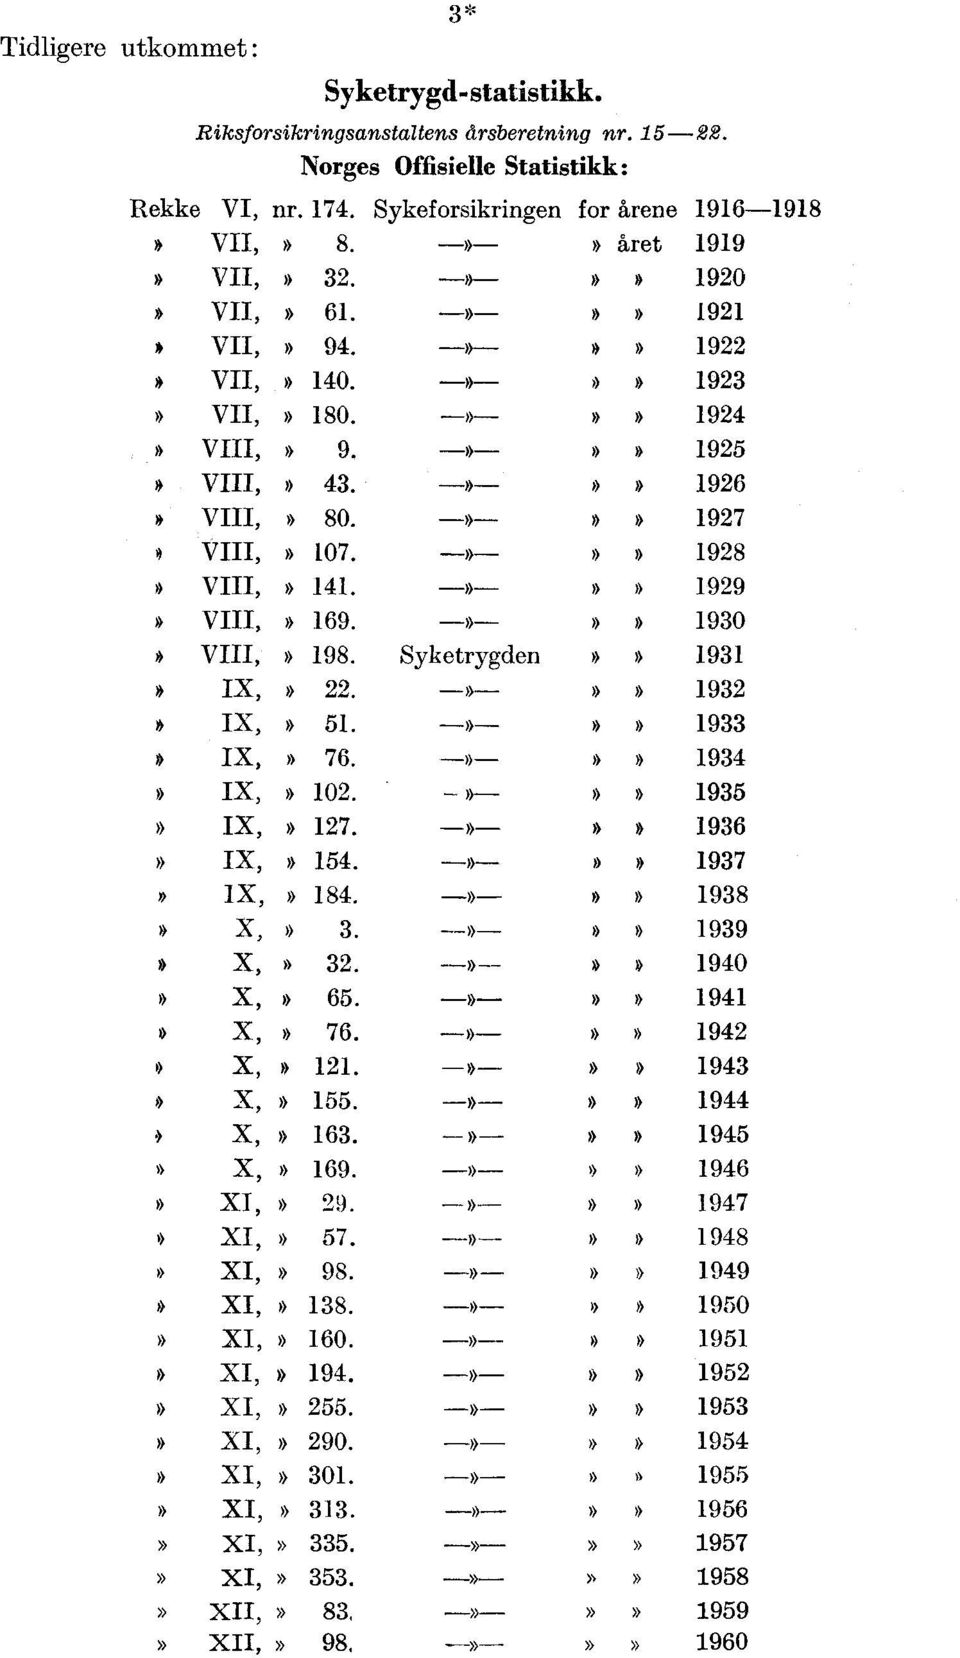 1928 * VIII,» 141 -»-»» 1929» VIII, * 169 -»-»» 1930» VIII,» 198 Syketrygden»» 1931» IX,» 22 -»-»» 1932» IX,» 51 -»-»» 1933» IX,» 76 -»-»» 1934» IX,» 102 -»-»» 1935» IX,» 127 -»-»» 1936» IX,» 154